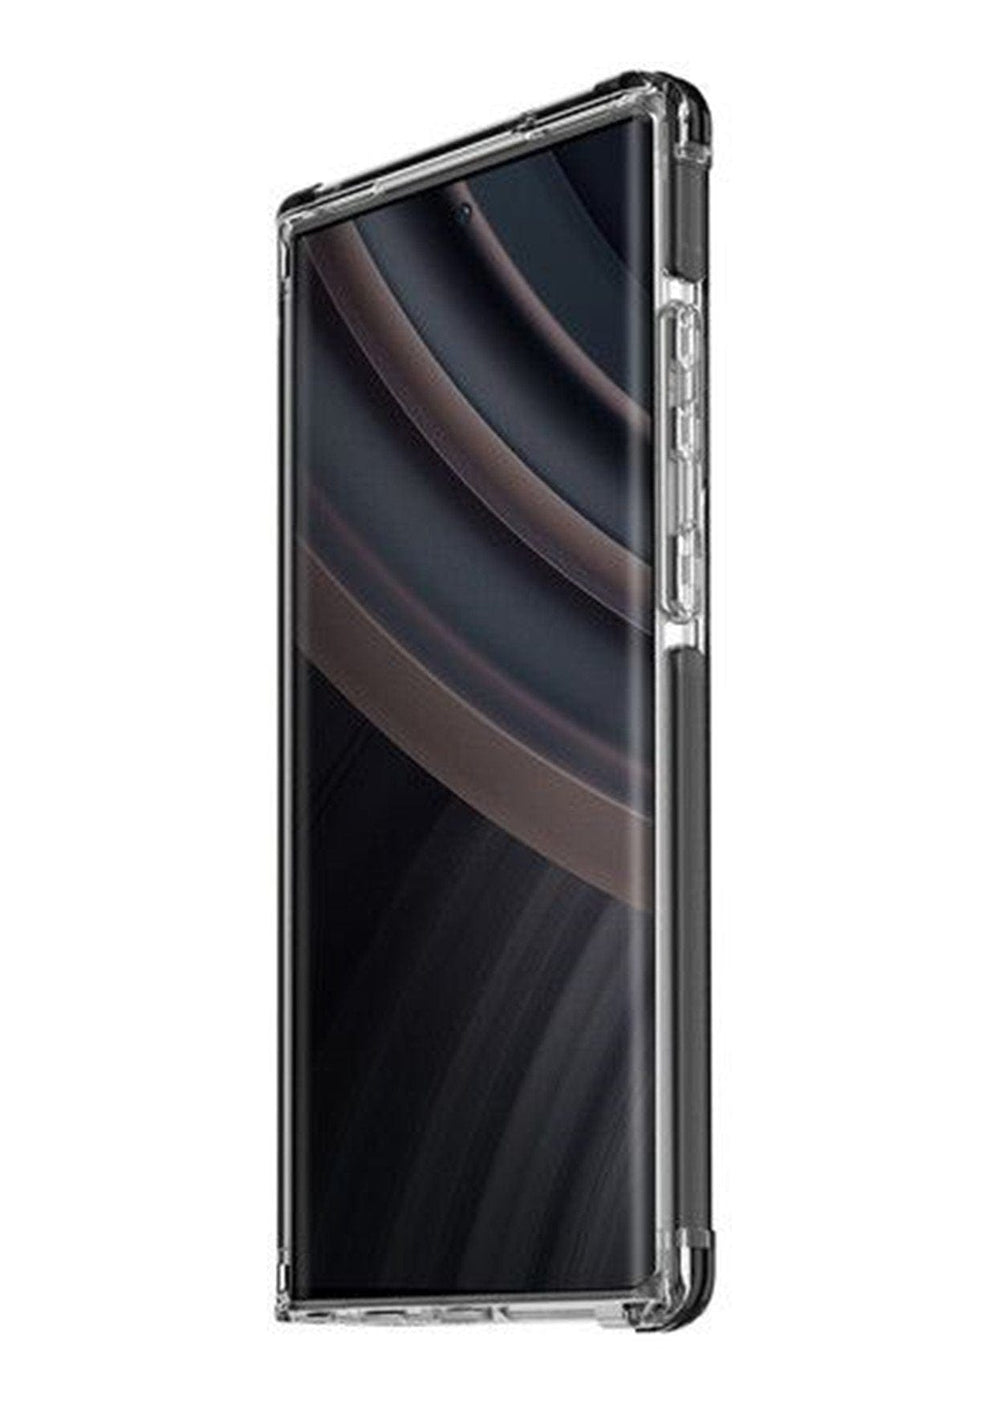 UNIQ Cases & Covers Black / Samsung Galaxy S24 Ultra Samsung S24 Ultra Clear Black Case - Uniq COMBAT